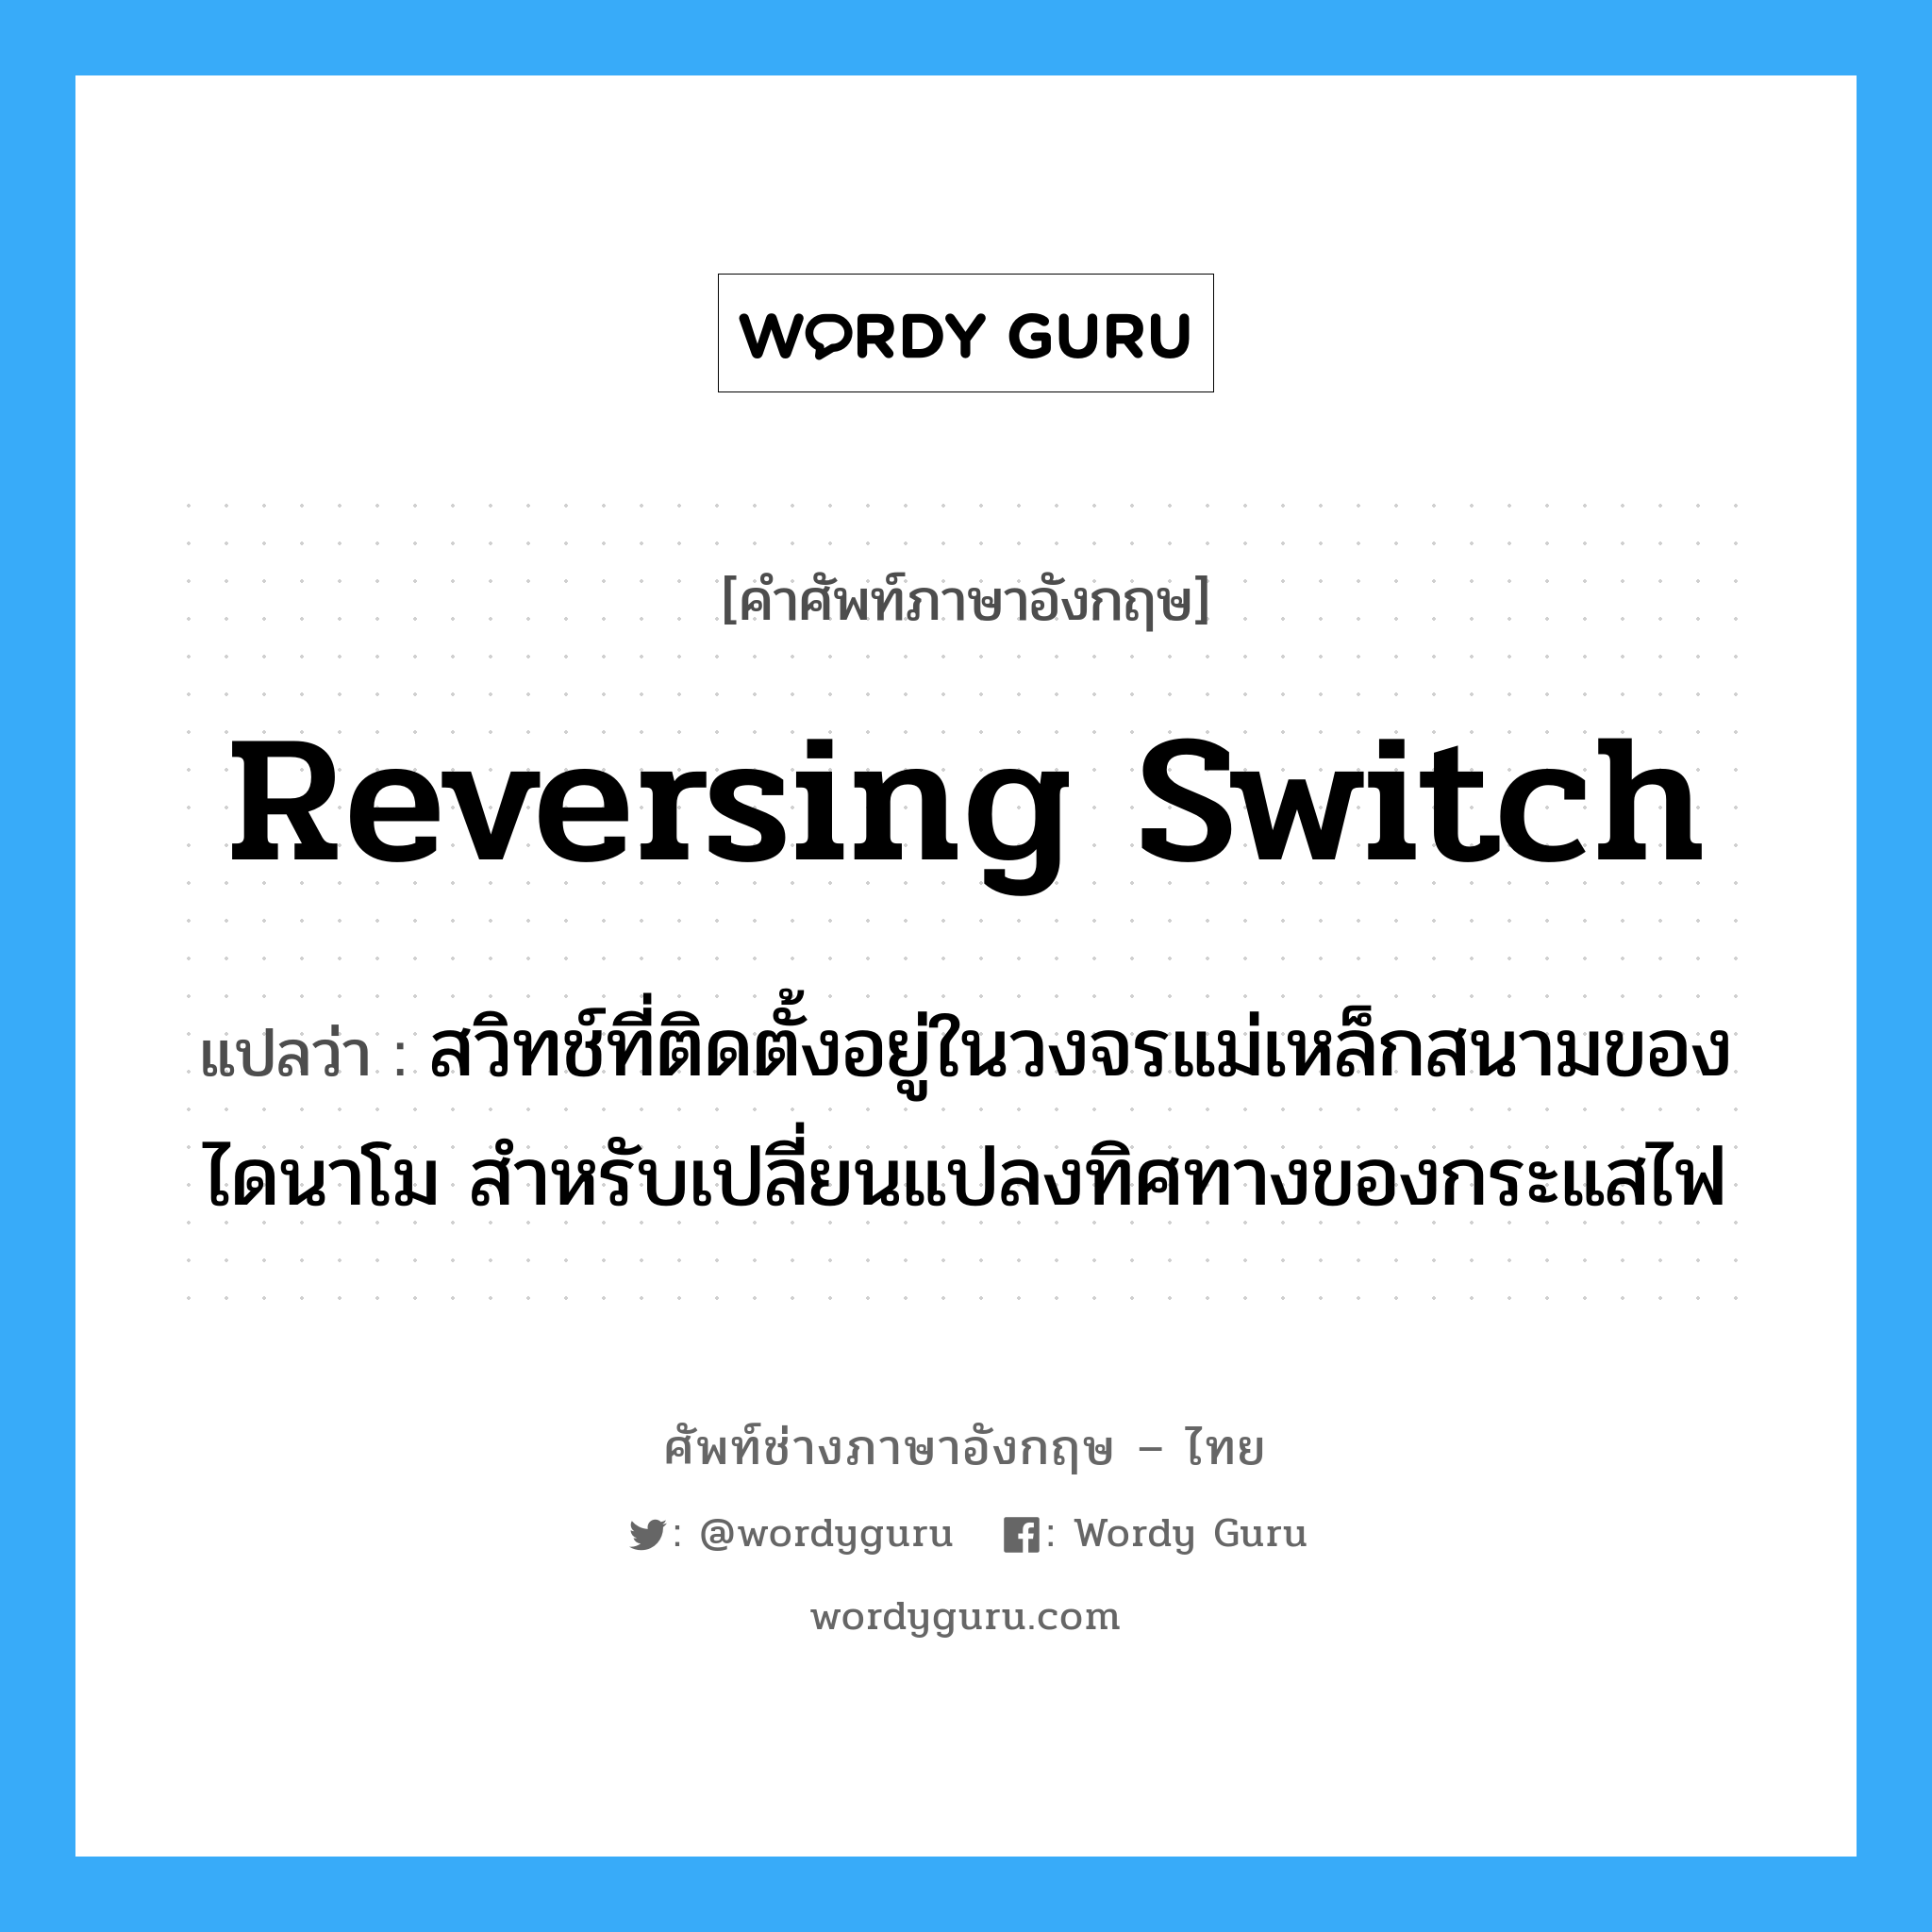 reversing switch แปลว่า?, คำศัพท์ช่างภาษาอังกฤษ - ไทย reversing switch คำศัพท์ภาษาอังกฤษ reversing switch แปลว่า สวิทช์ที่ติดตั้งอยู่ในวงจรแม่เหล็กสนามของไดนาโม สำหรับเปลี่ยนแปลงทิศทางของกระแสไฟ